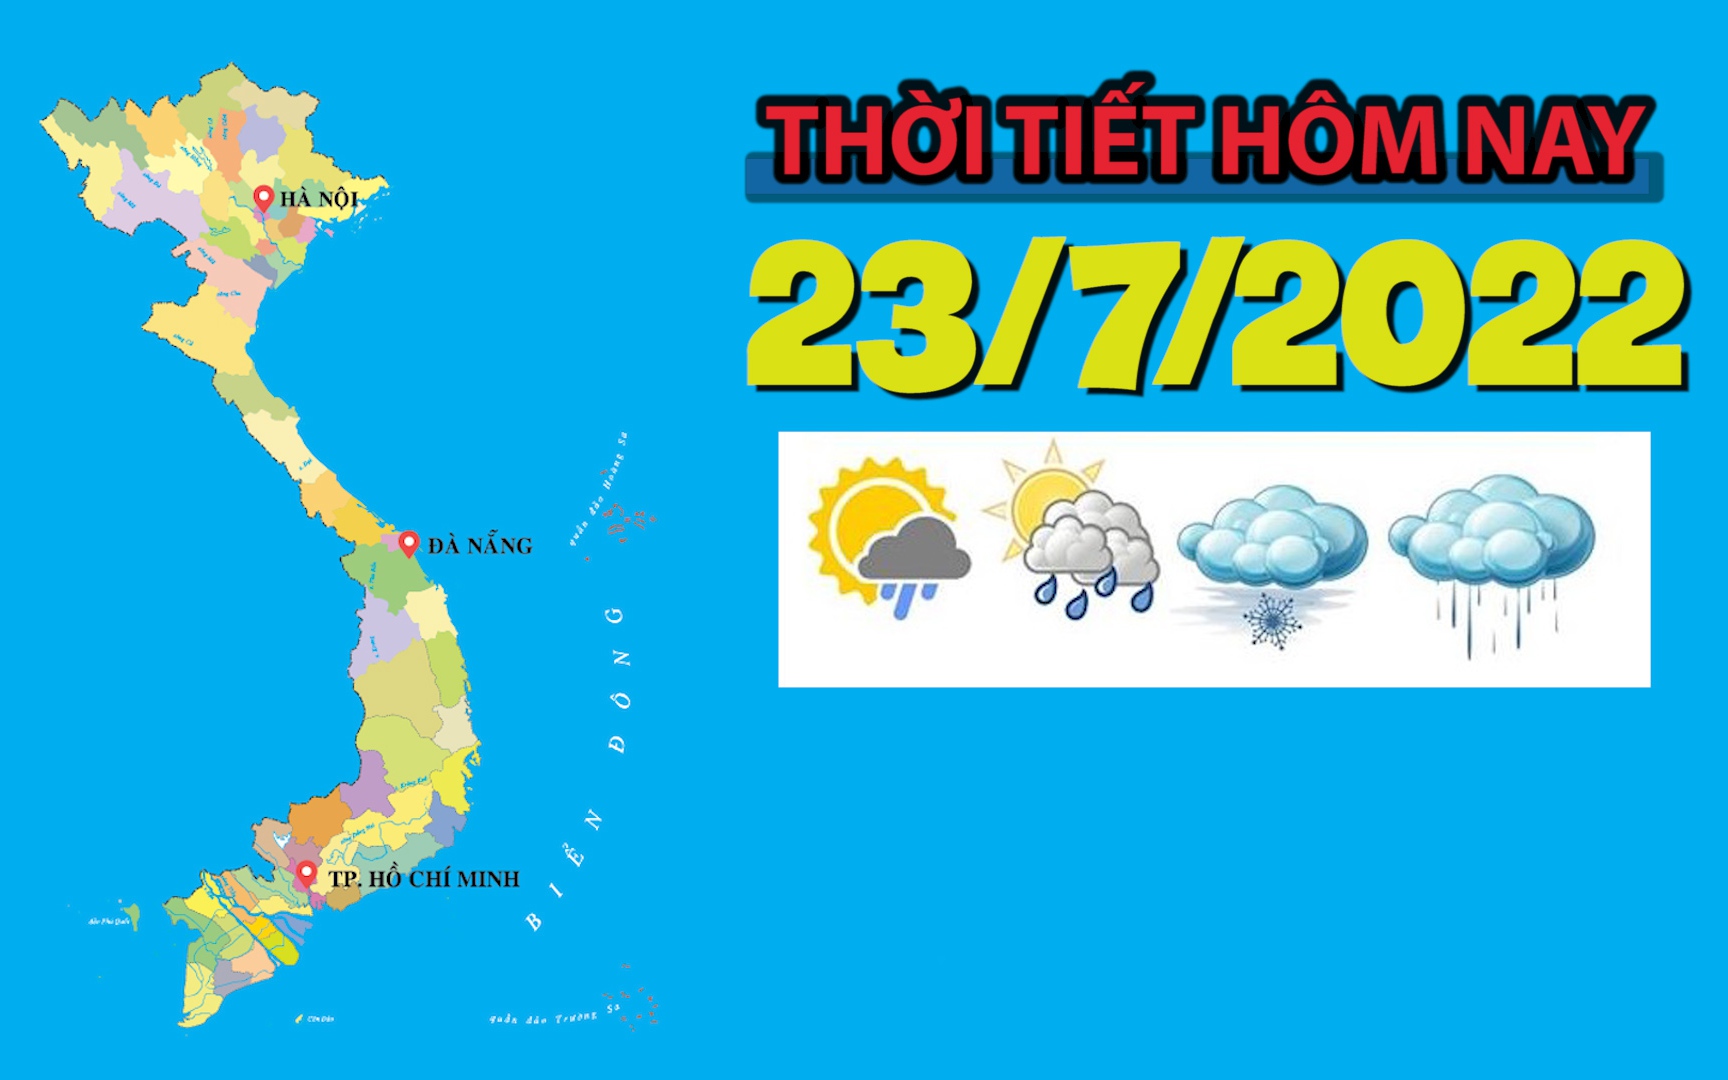 Thời tiết hôm nay 23/7/2022: Hà Nội, Bắc Bộ, Trung Bộ ngày nắng, chiều tối mưa dông